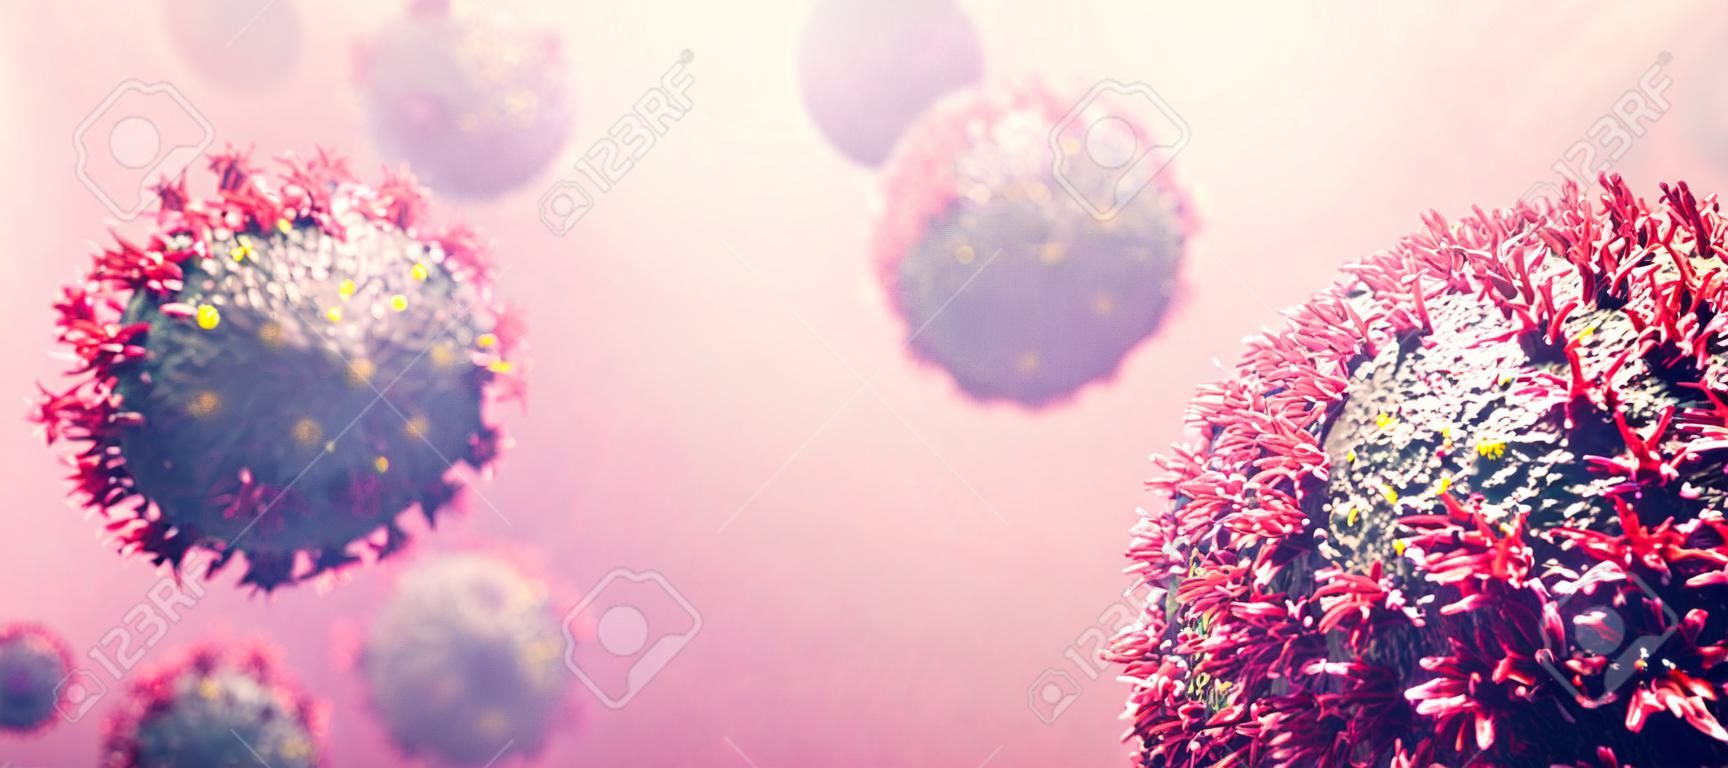 Coronavirus COVID-19 organismo di attacco. Corona virus che causa pandemia. illustrazione 3D